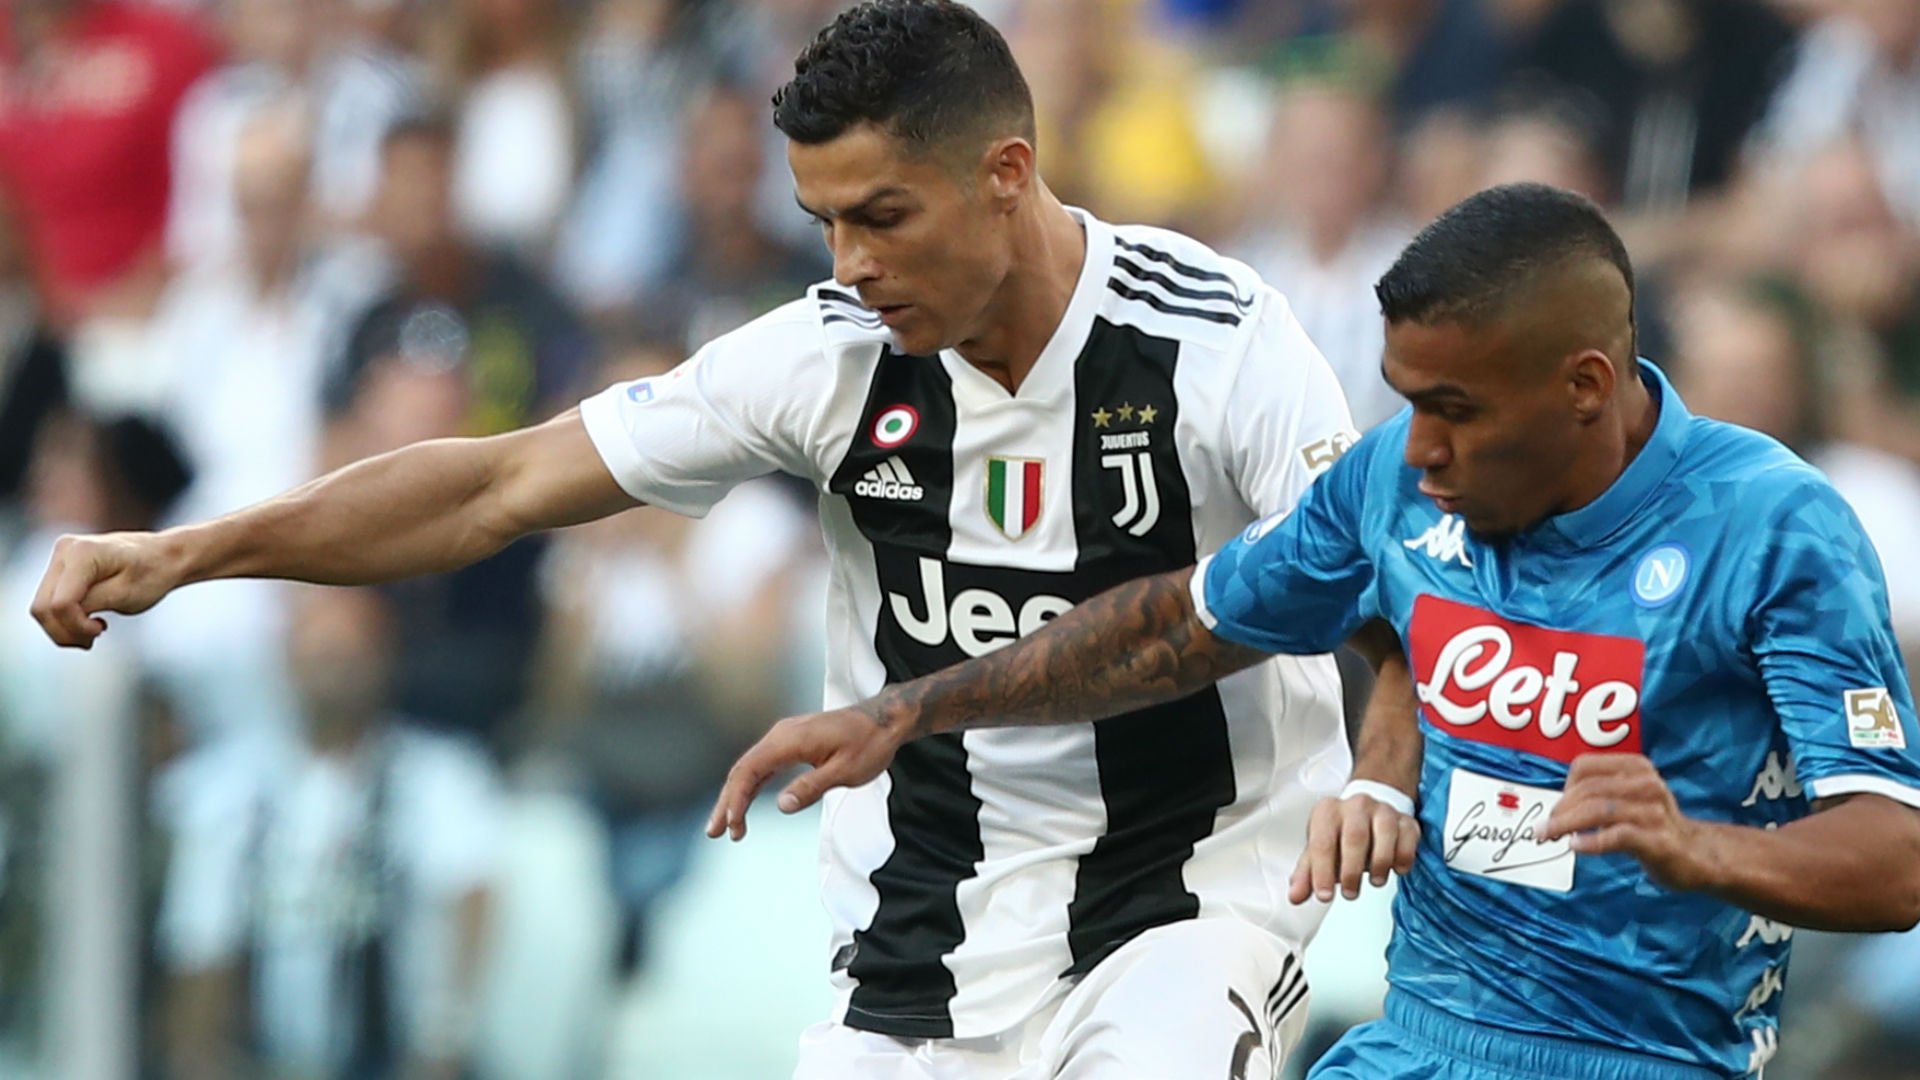 Prediksi Bola Napoli vs Juventus 04 Maret 2019